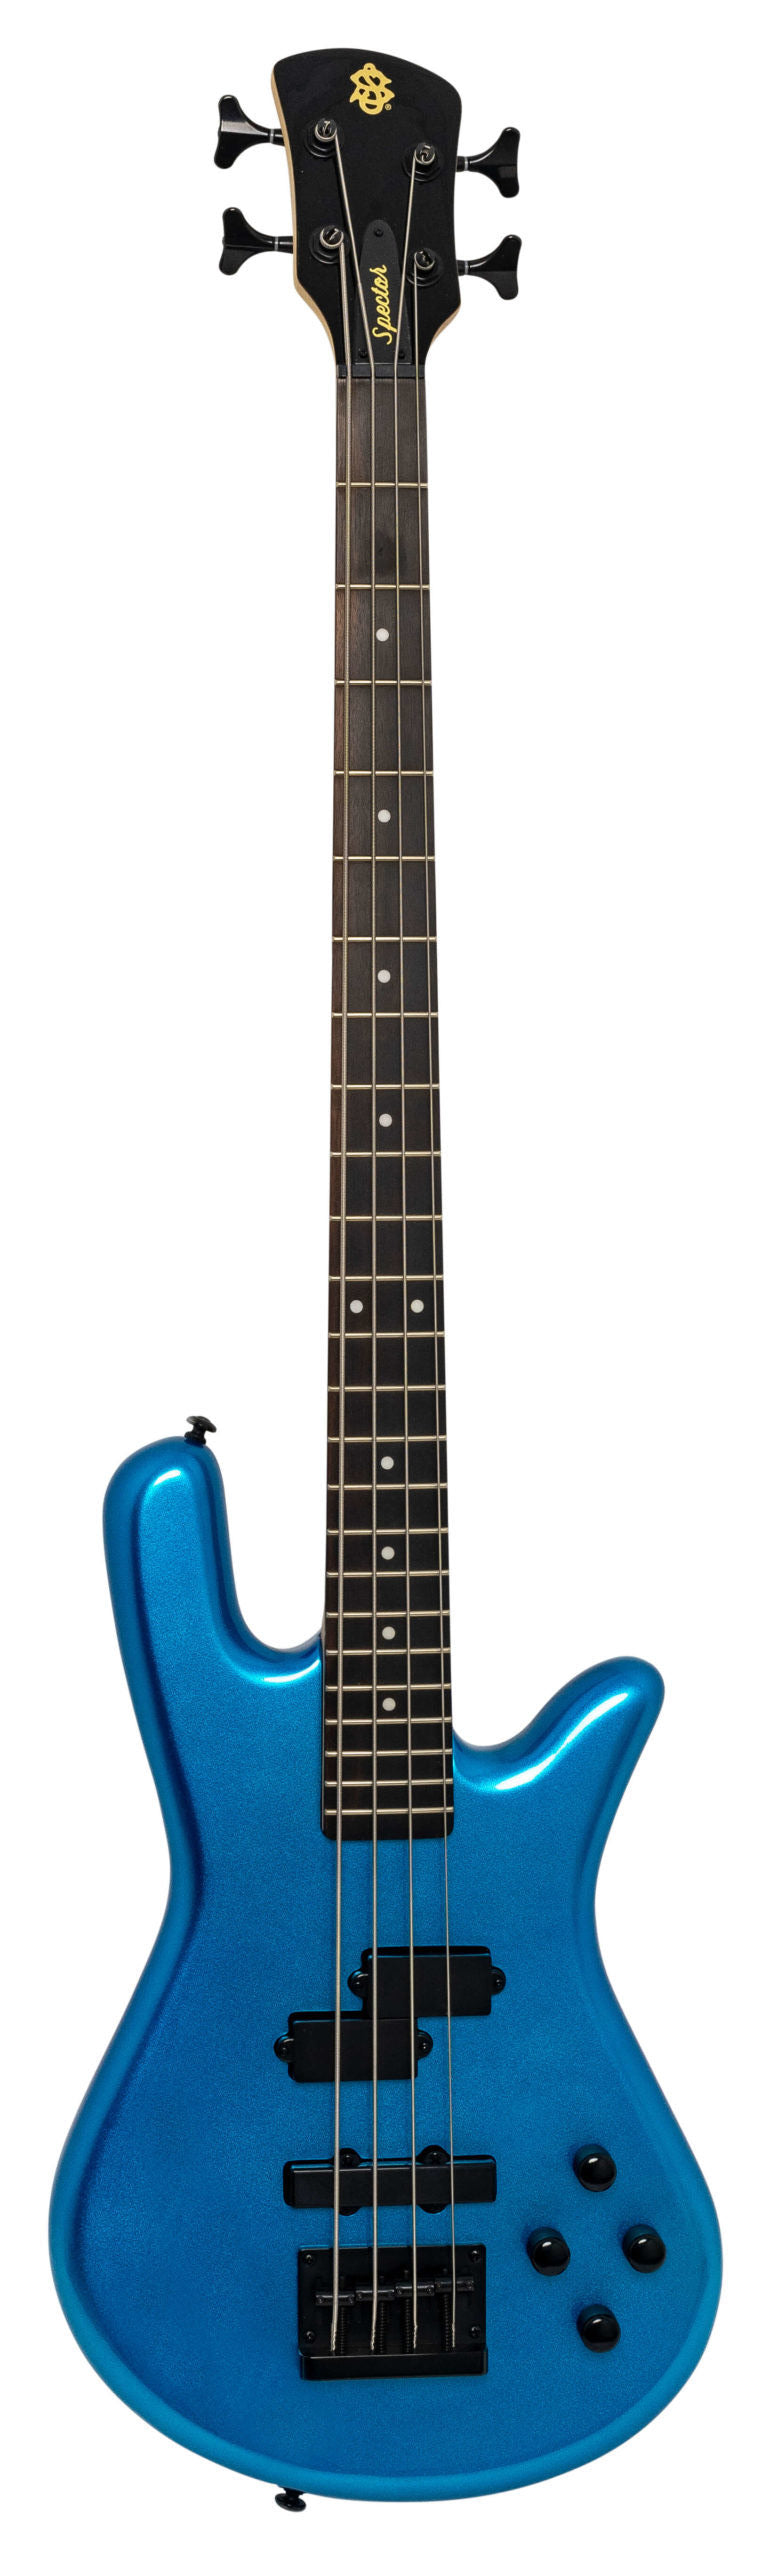 Spector Performer 4 4 String Bass Guitar - Metallic Blue